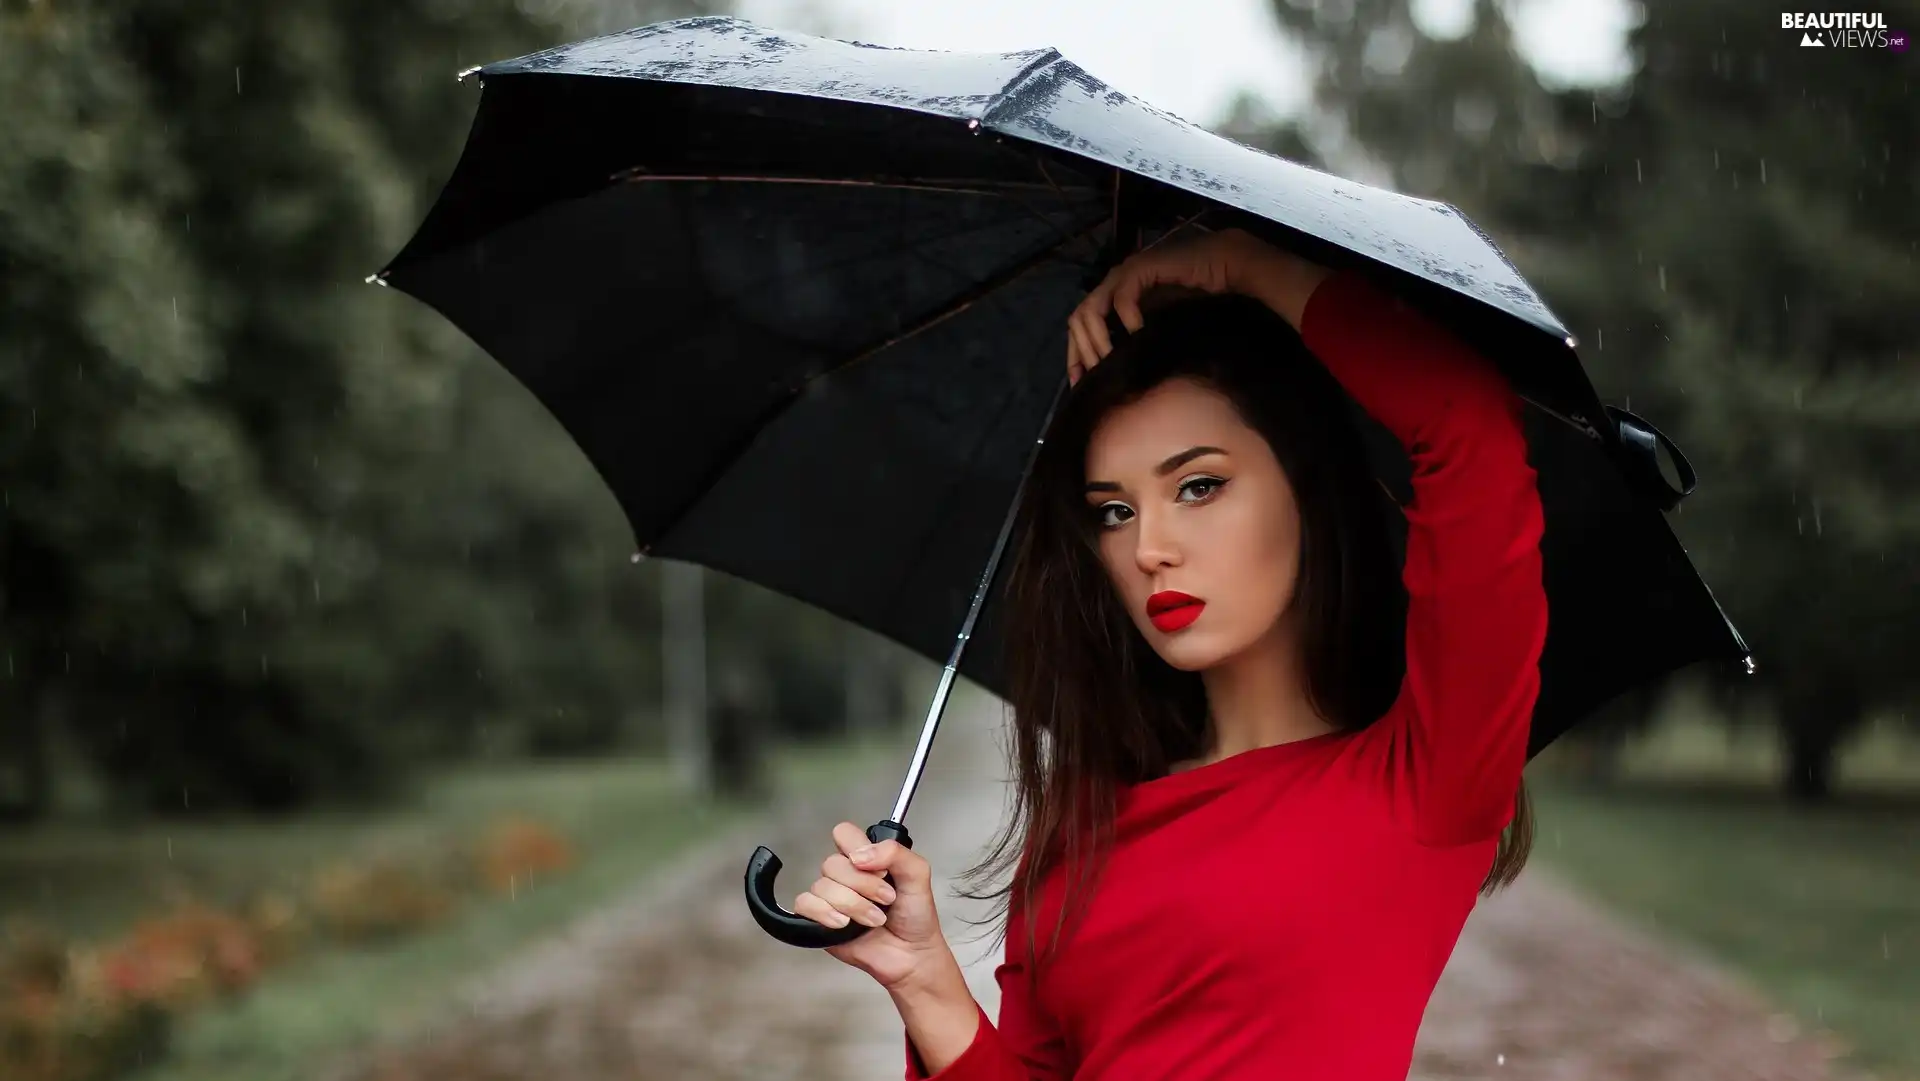 Umbrella, Women, Rain